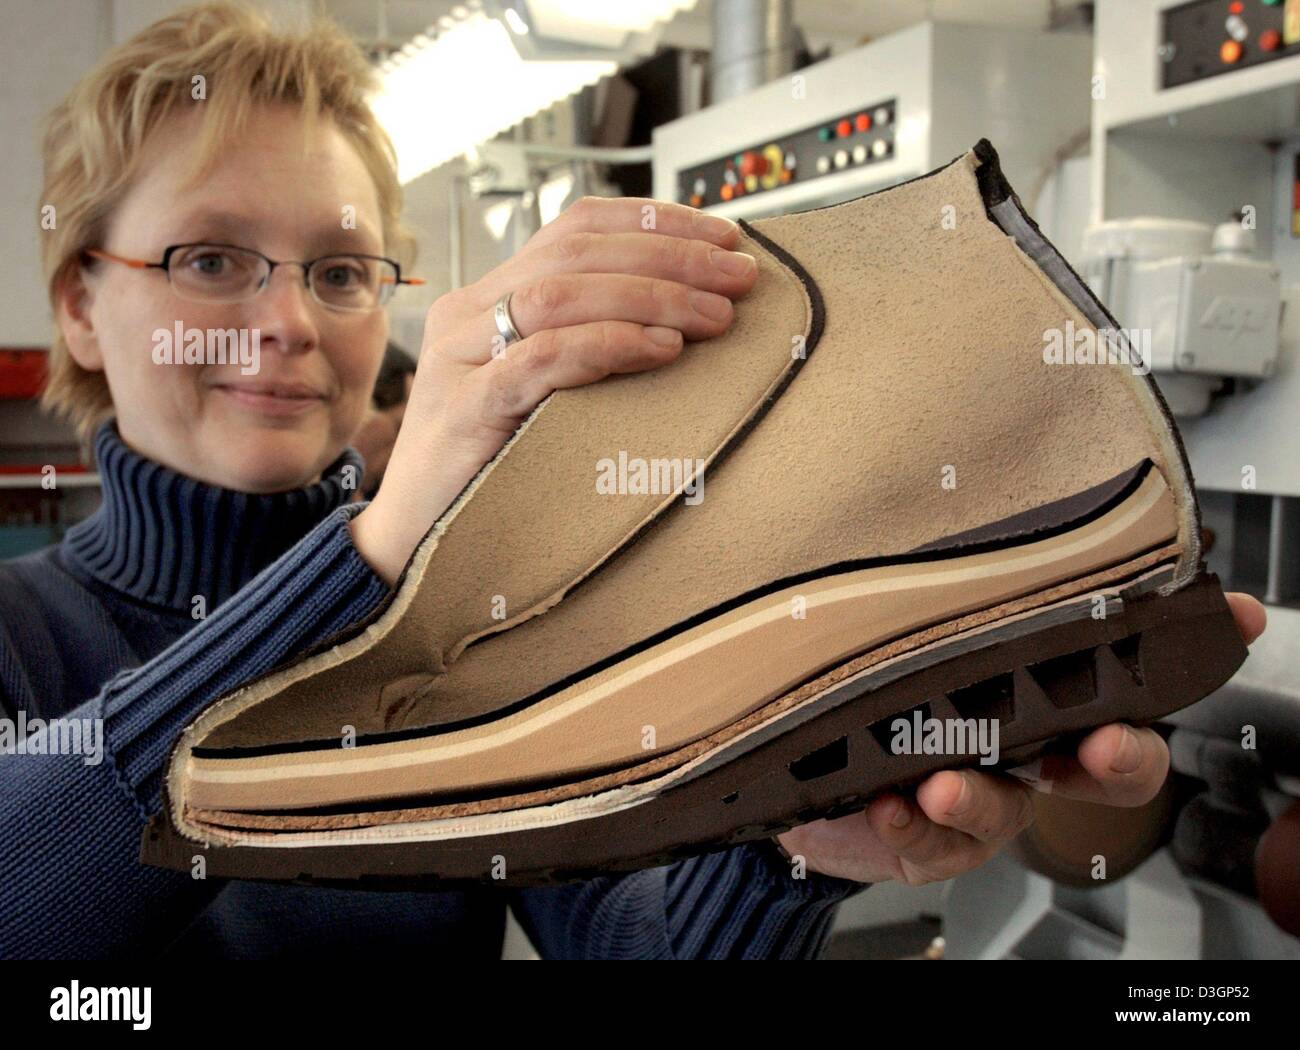 Afp) - présente la Sorella coupe d'une version d'un modèle de chaussure  orthopédique Petters Schuh GmbH, fabricant de chaussures orthopédiques, à  Gera, Allemagne, 22 janvier 2004. Petters Schuh GmbH, qui a été